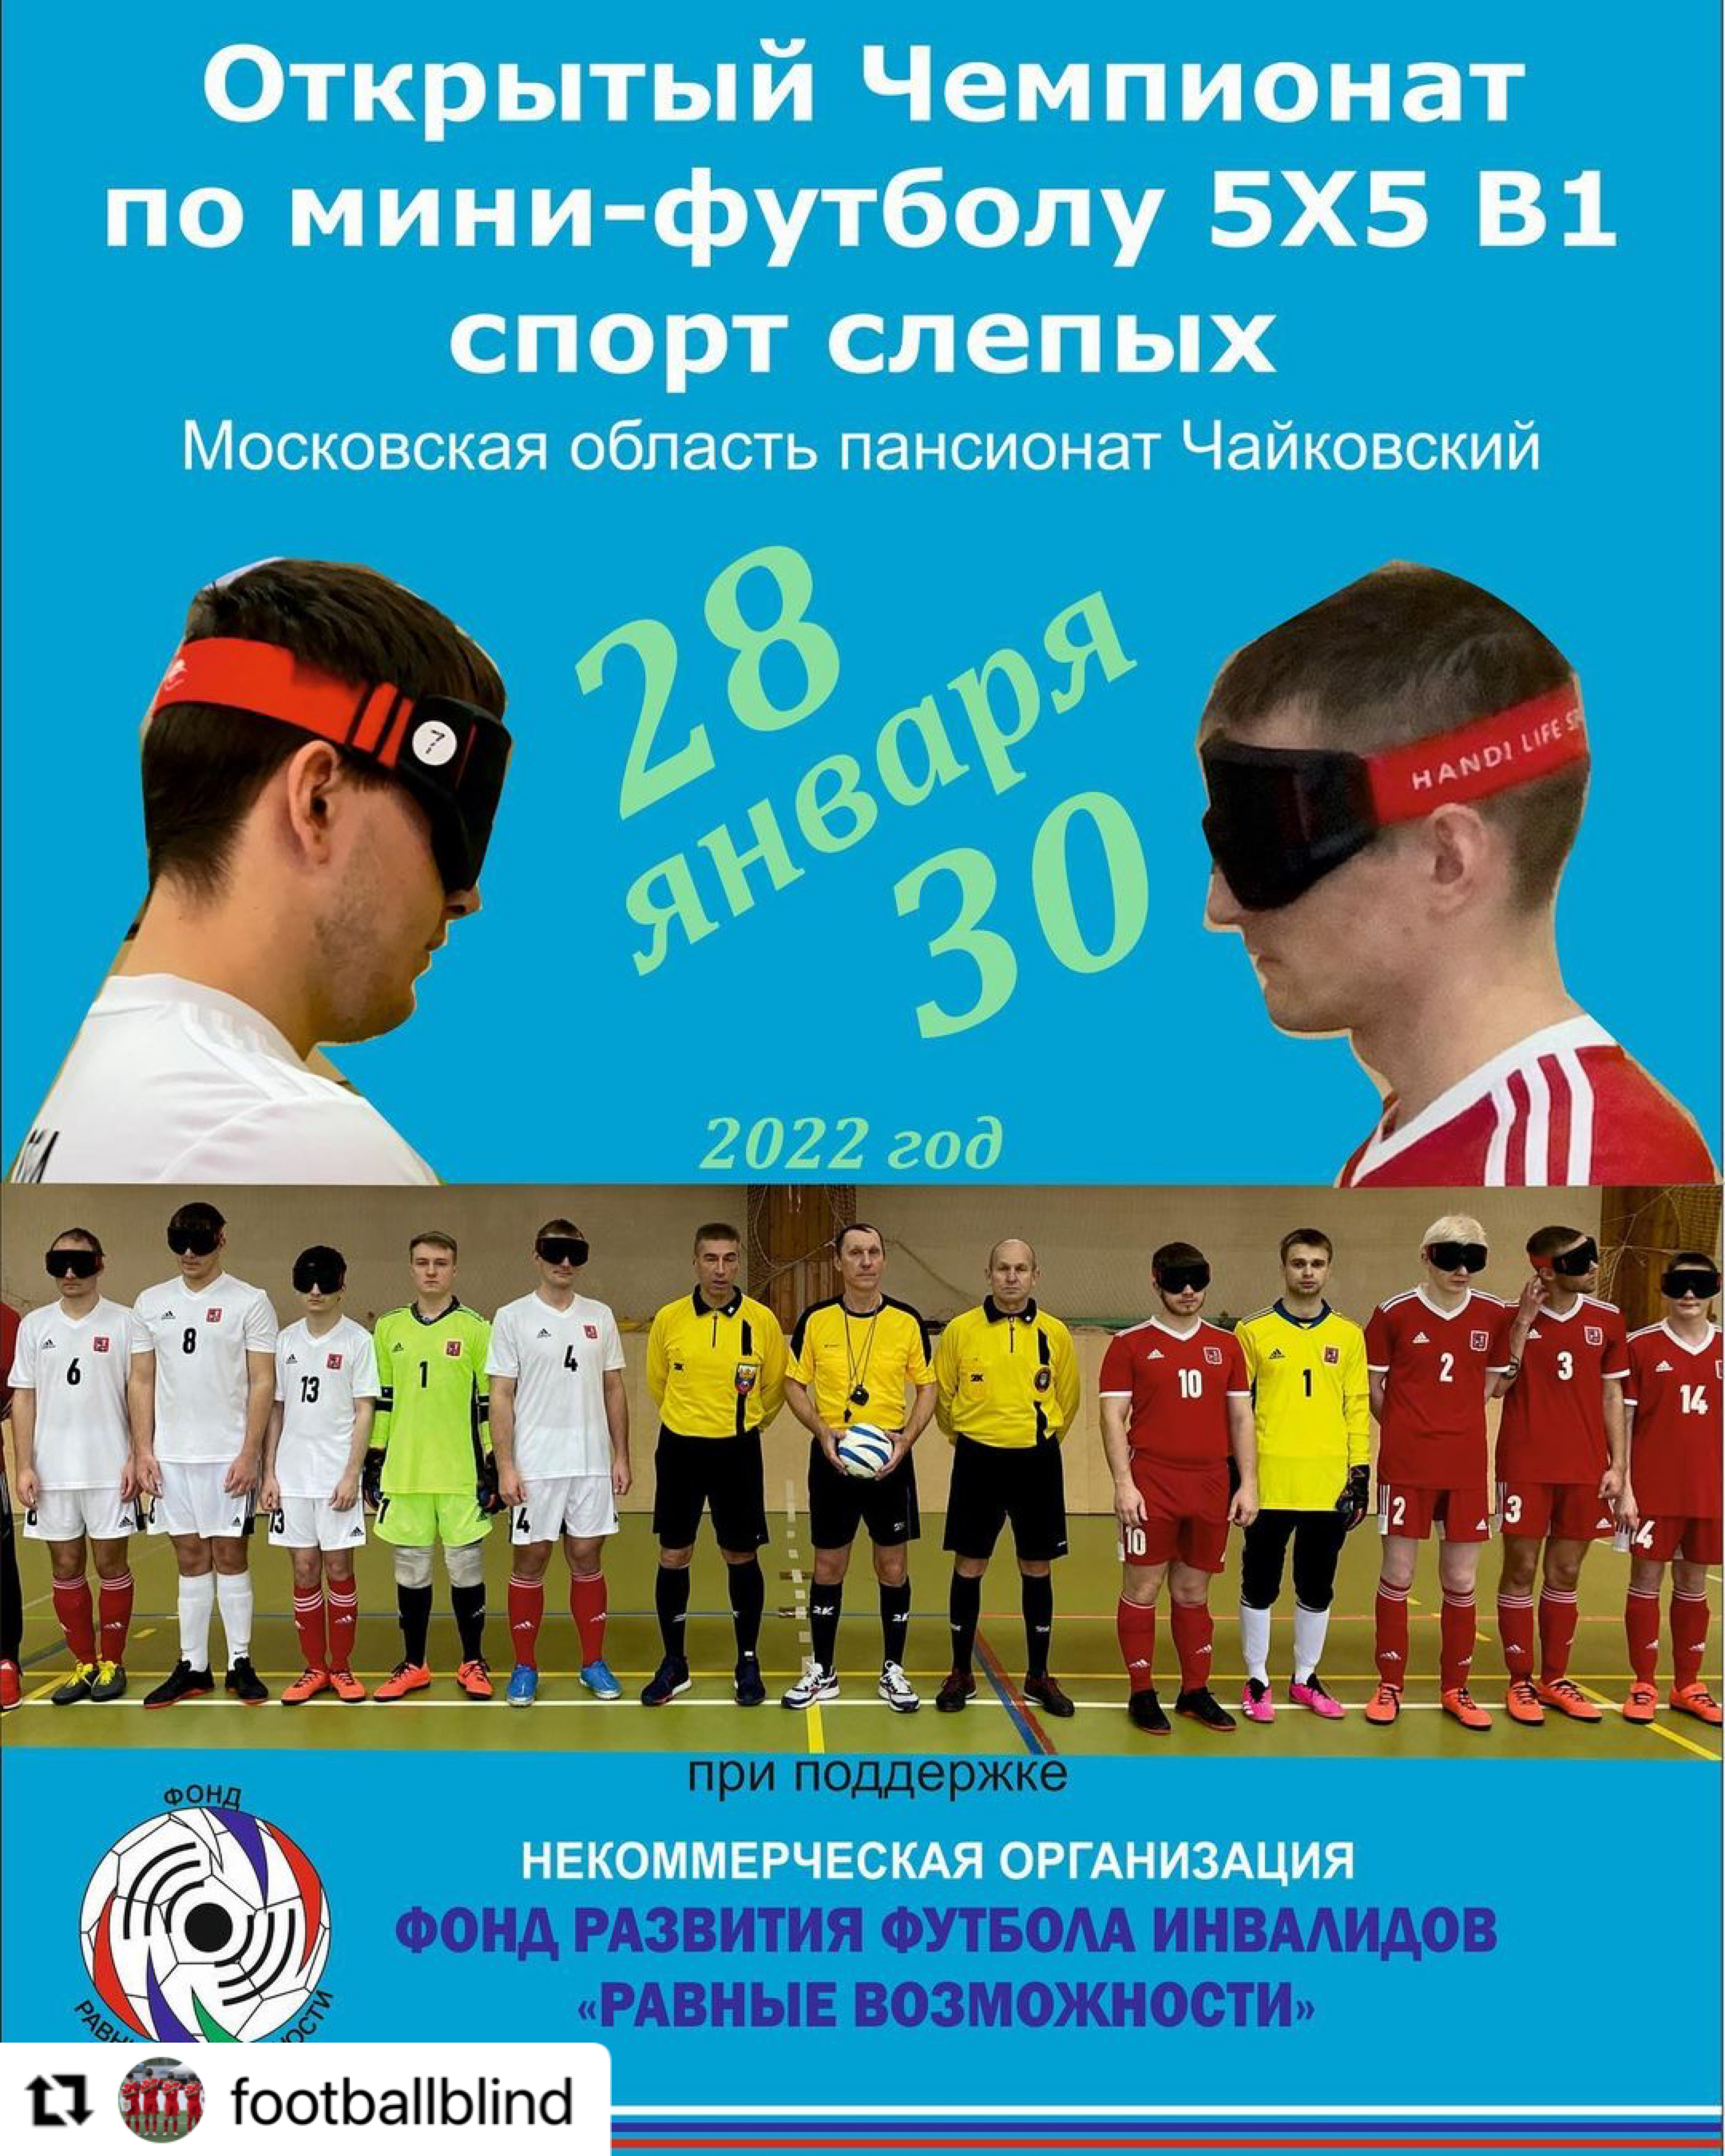 Открытый Чемпионат Москвы по мини-футболу 5х5 спорт слепых